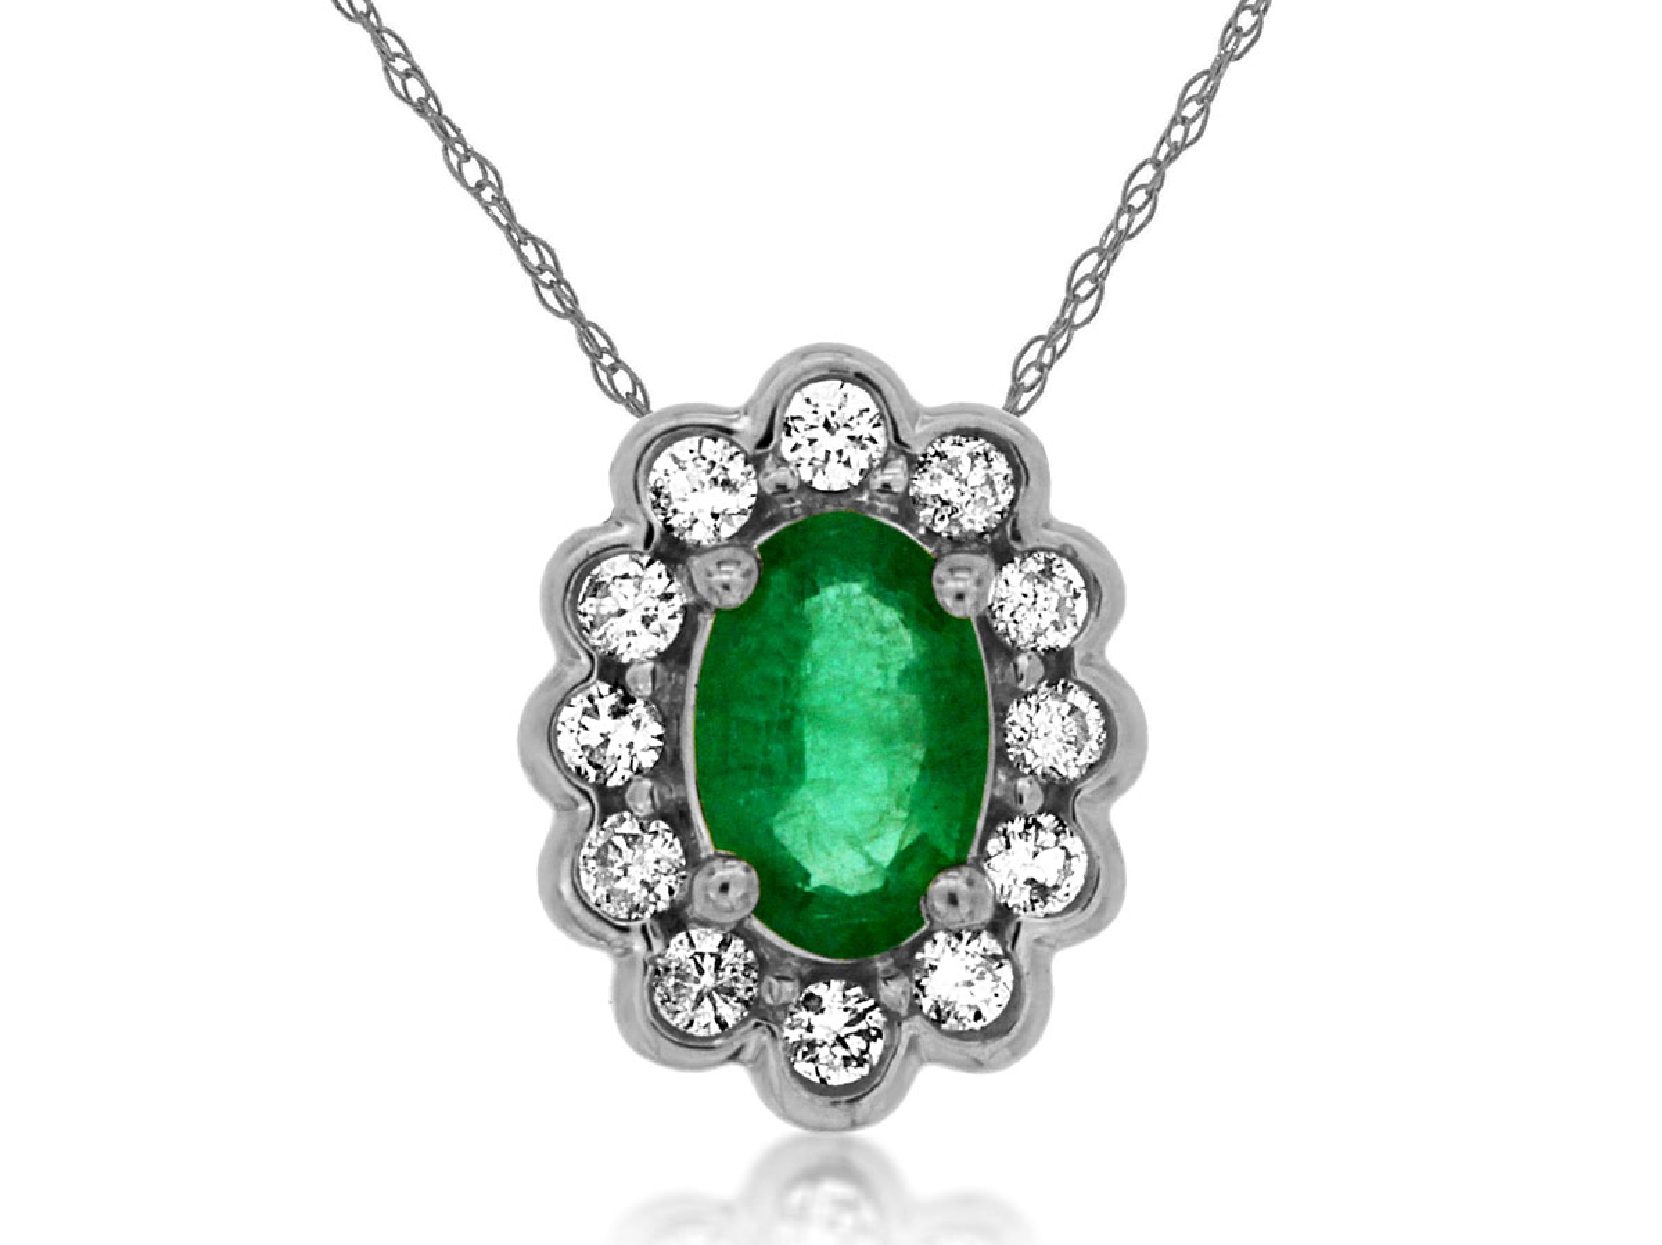 14K White Gold Emerald and Diamond Halo Necklace
.45ct Emerald
.16ct Diamonds
18 Inches